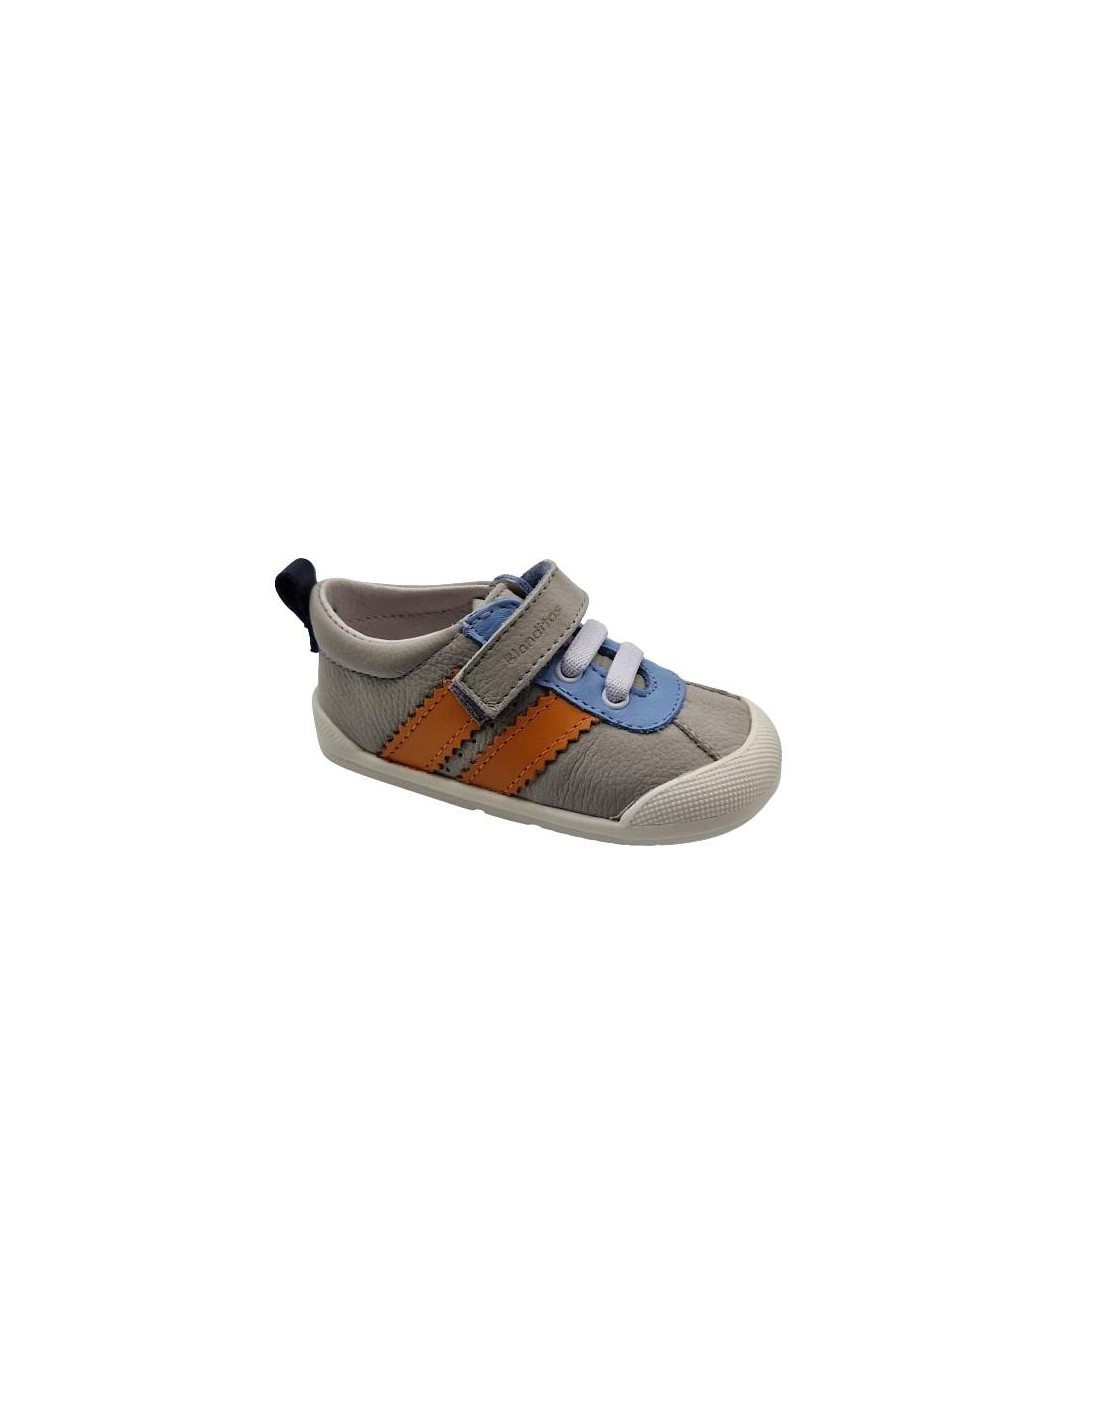 Zapatillas respetuosas niños Blanditos en color gris. Talla 25 Color  AGUAMARINA